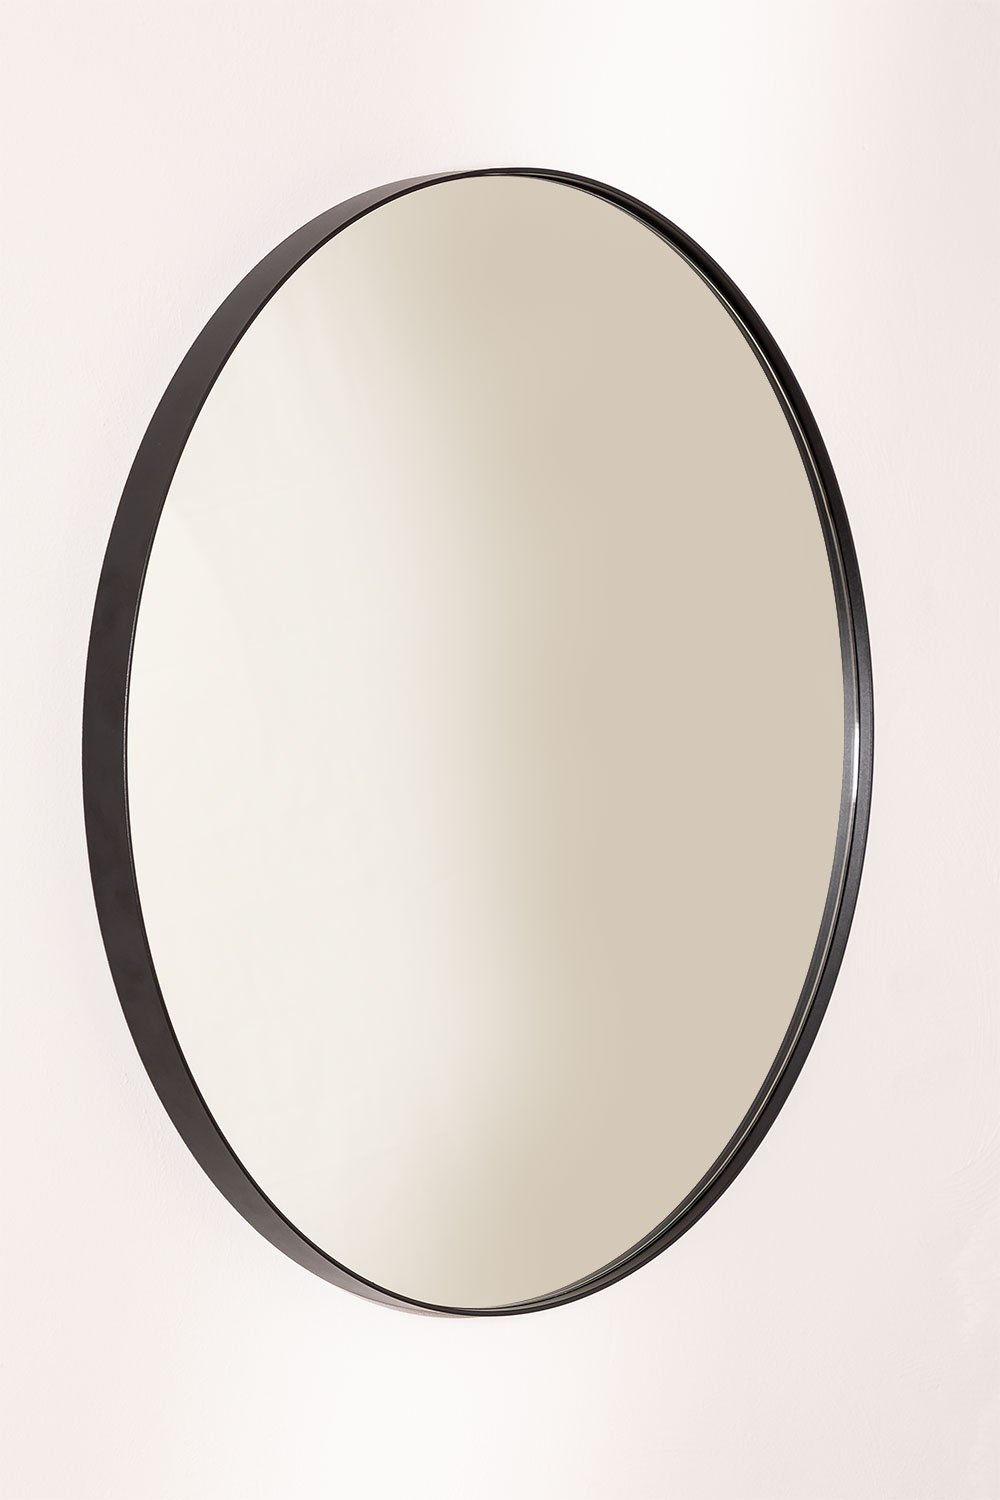 Okrągłe metalowe lustro łazienkowe ścienne (Ř60,5 cm) Gon, obrazek w galerii 1